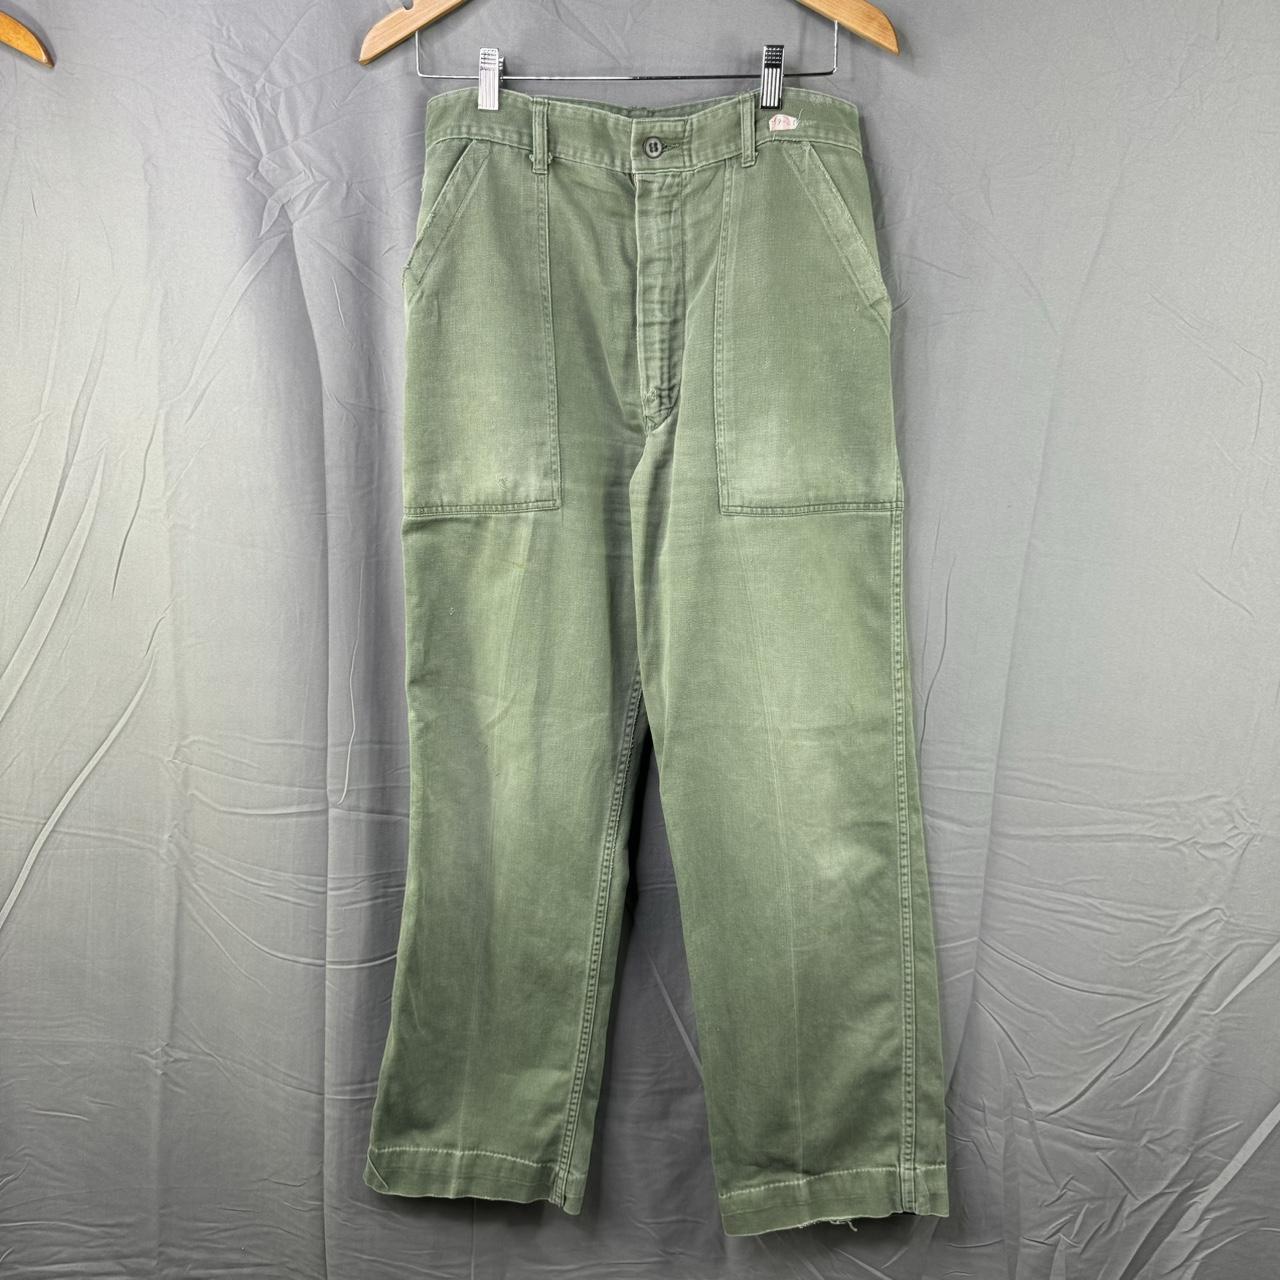 Vintage 80s Og 107 pants Beautiful pair, great - Depop